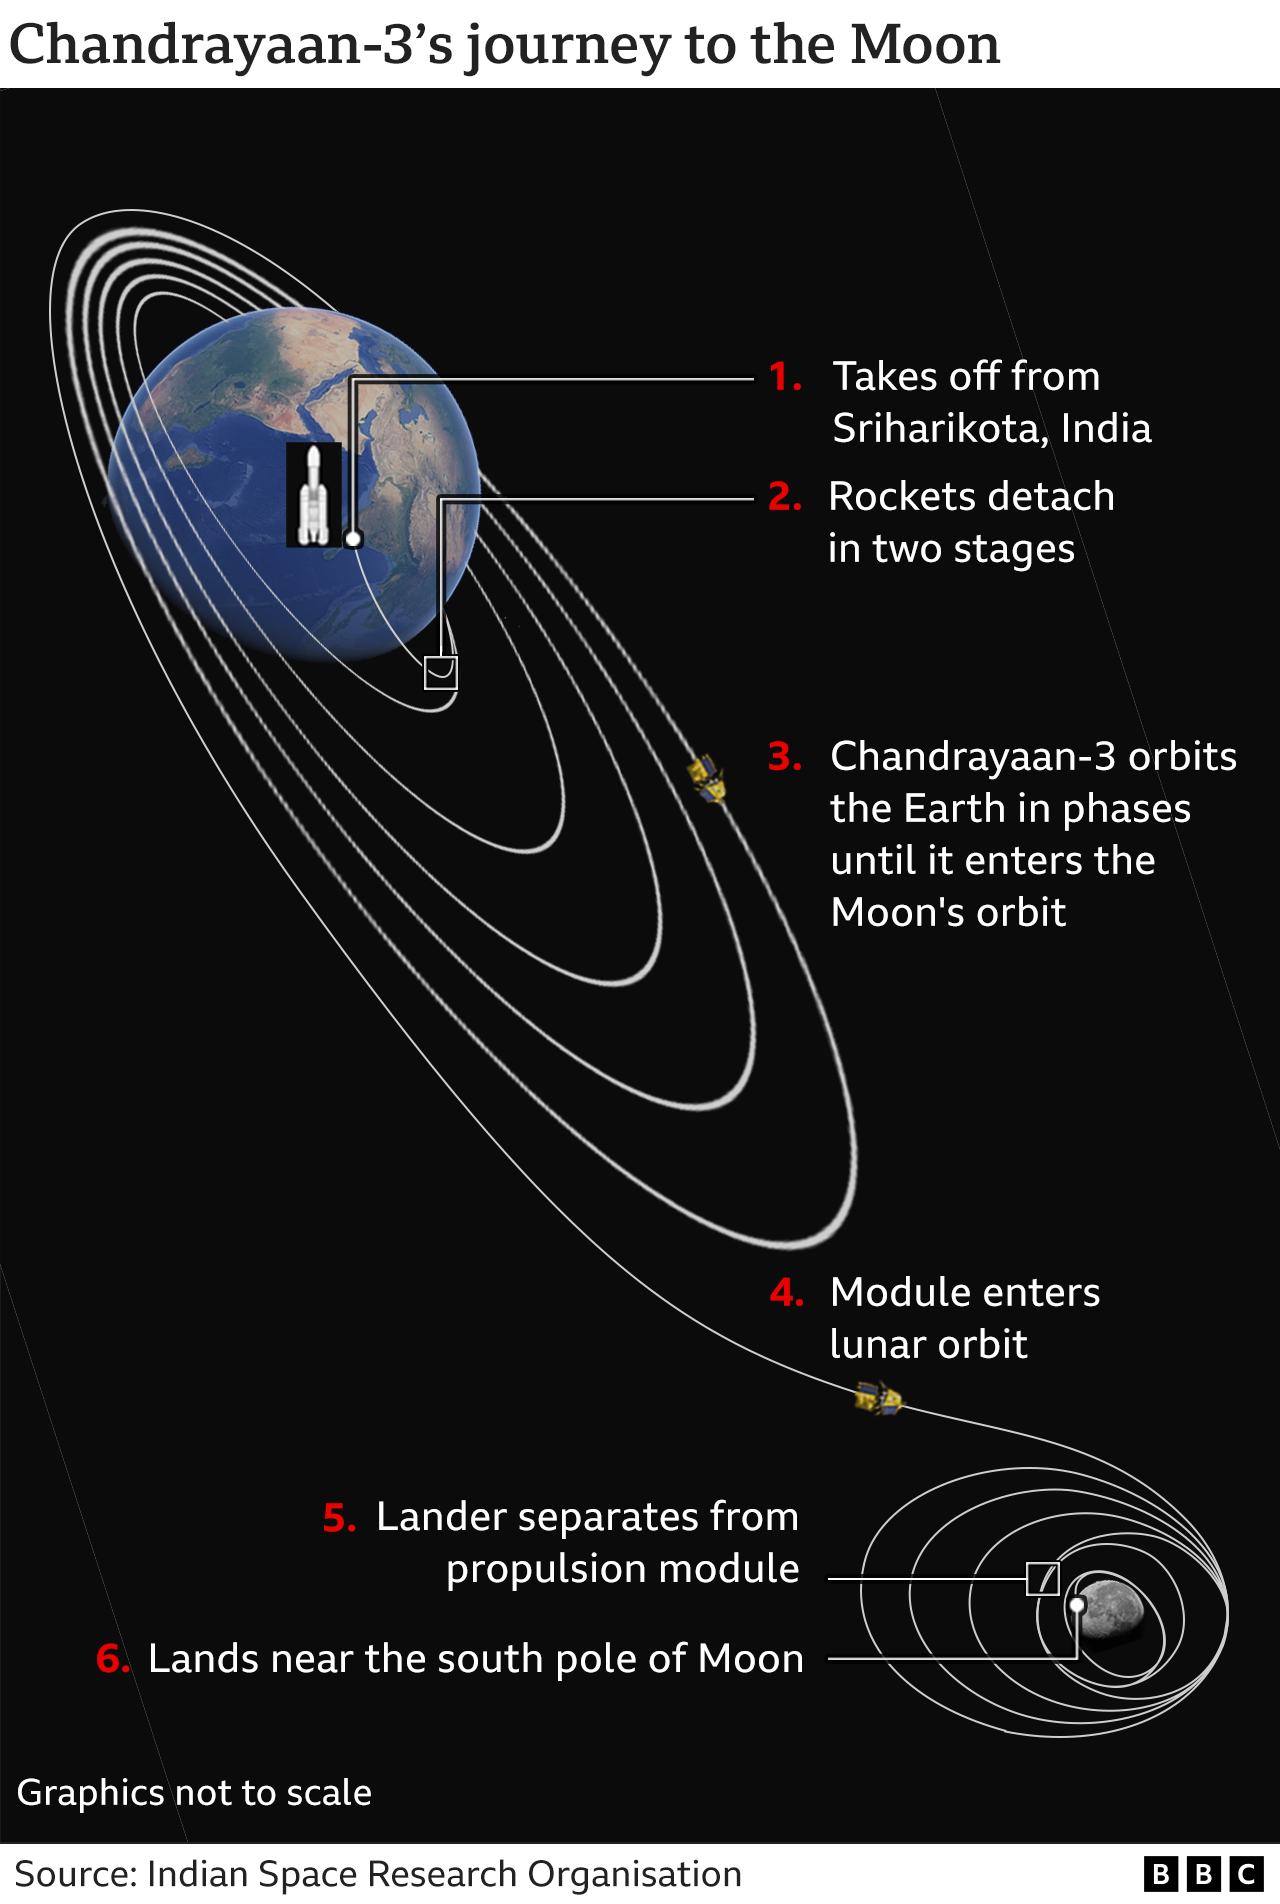 Изображение, показывающее, как "Чандраян-3" доберется до Луны с момента взлета , к поэтапному вращению вокруг Земли до тех пор, пока она не достигнет орбиты Луны, когда посадочный модуль отделится от двигательного модуля перед приземлением возле южного полюса Луны